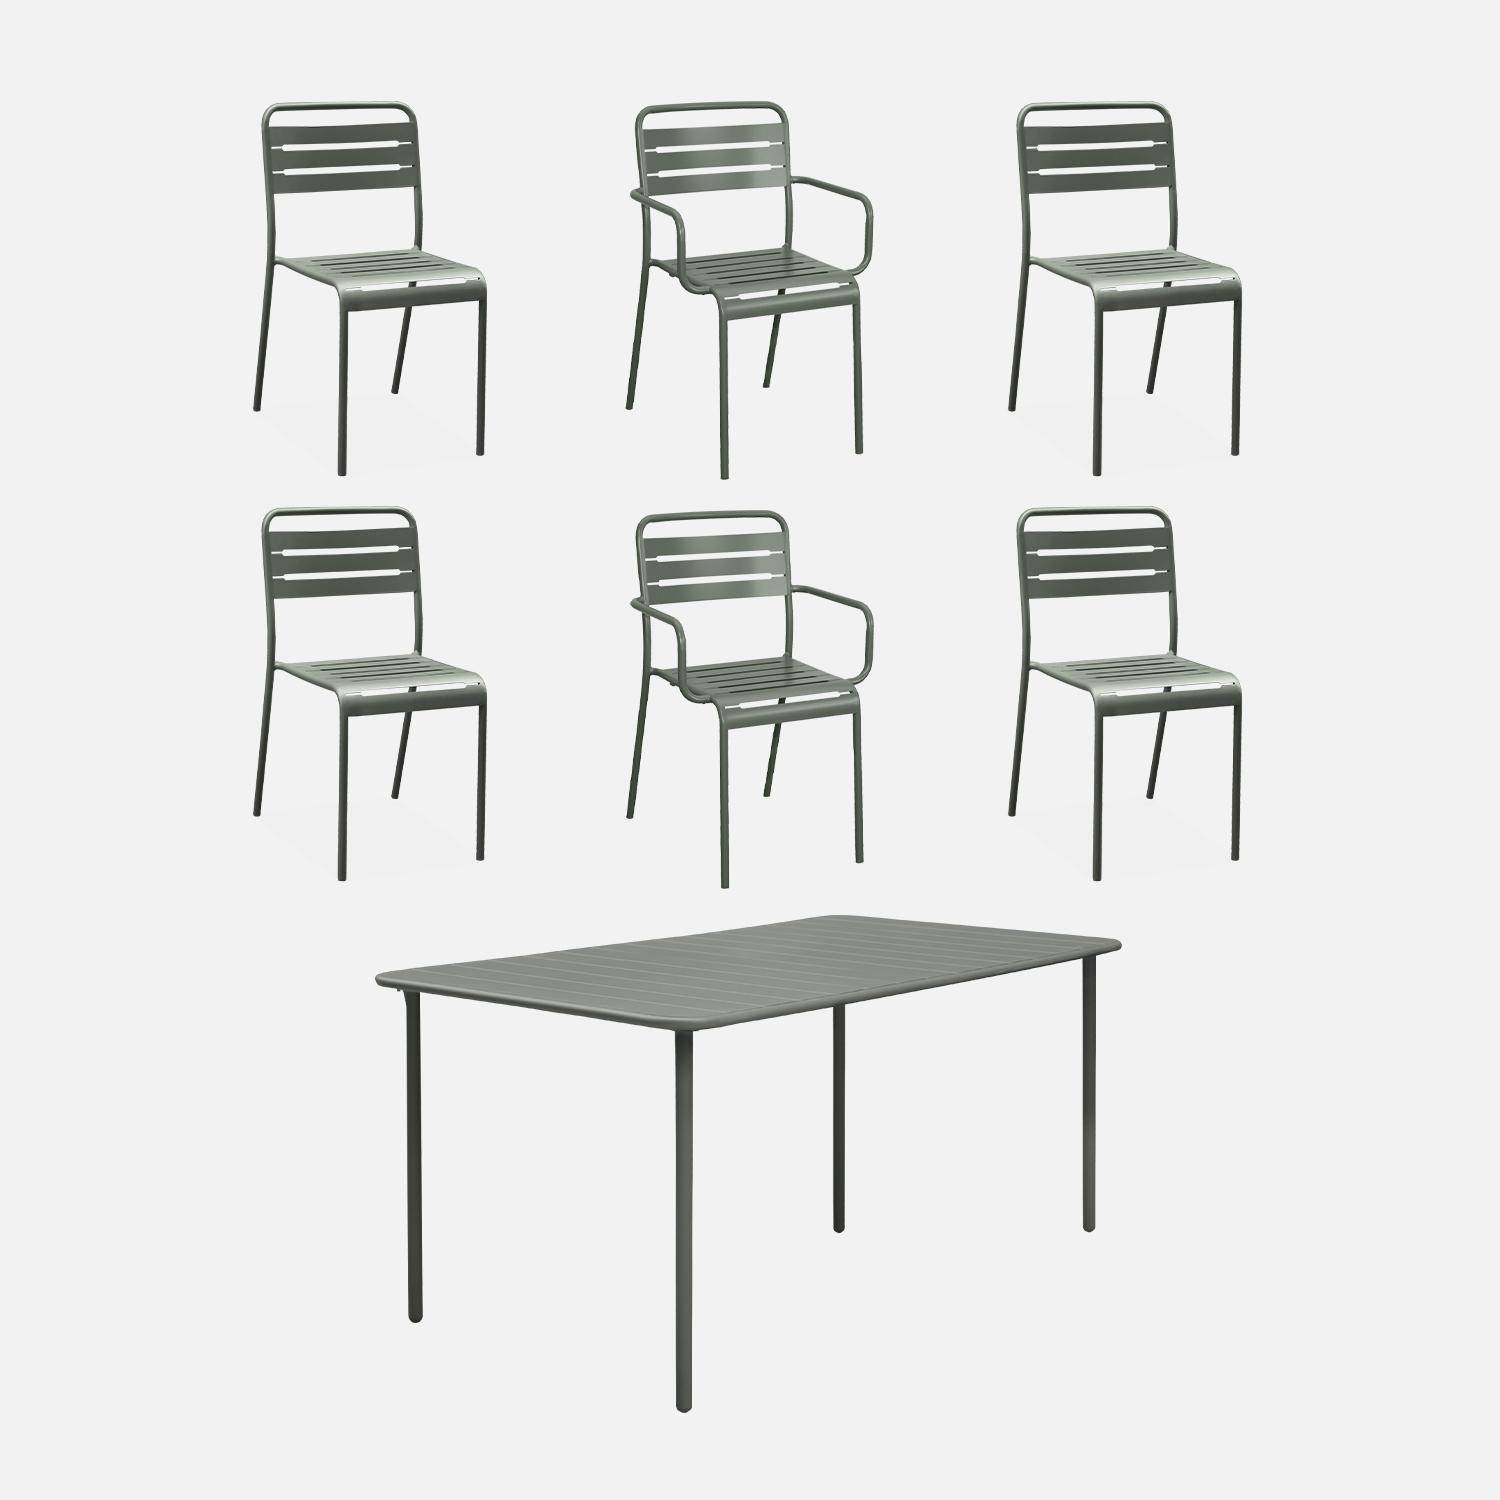 Table de jardin métal + 2 fauteuils et 4 chaises, kaki, acier traitement anti rouille Photo1